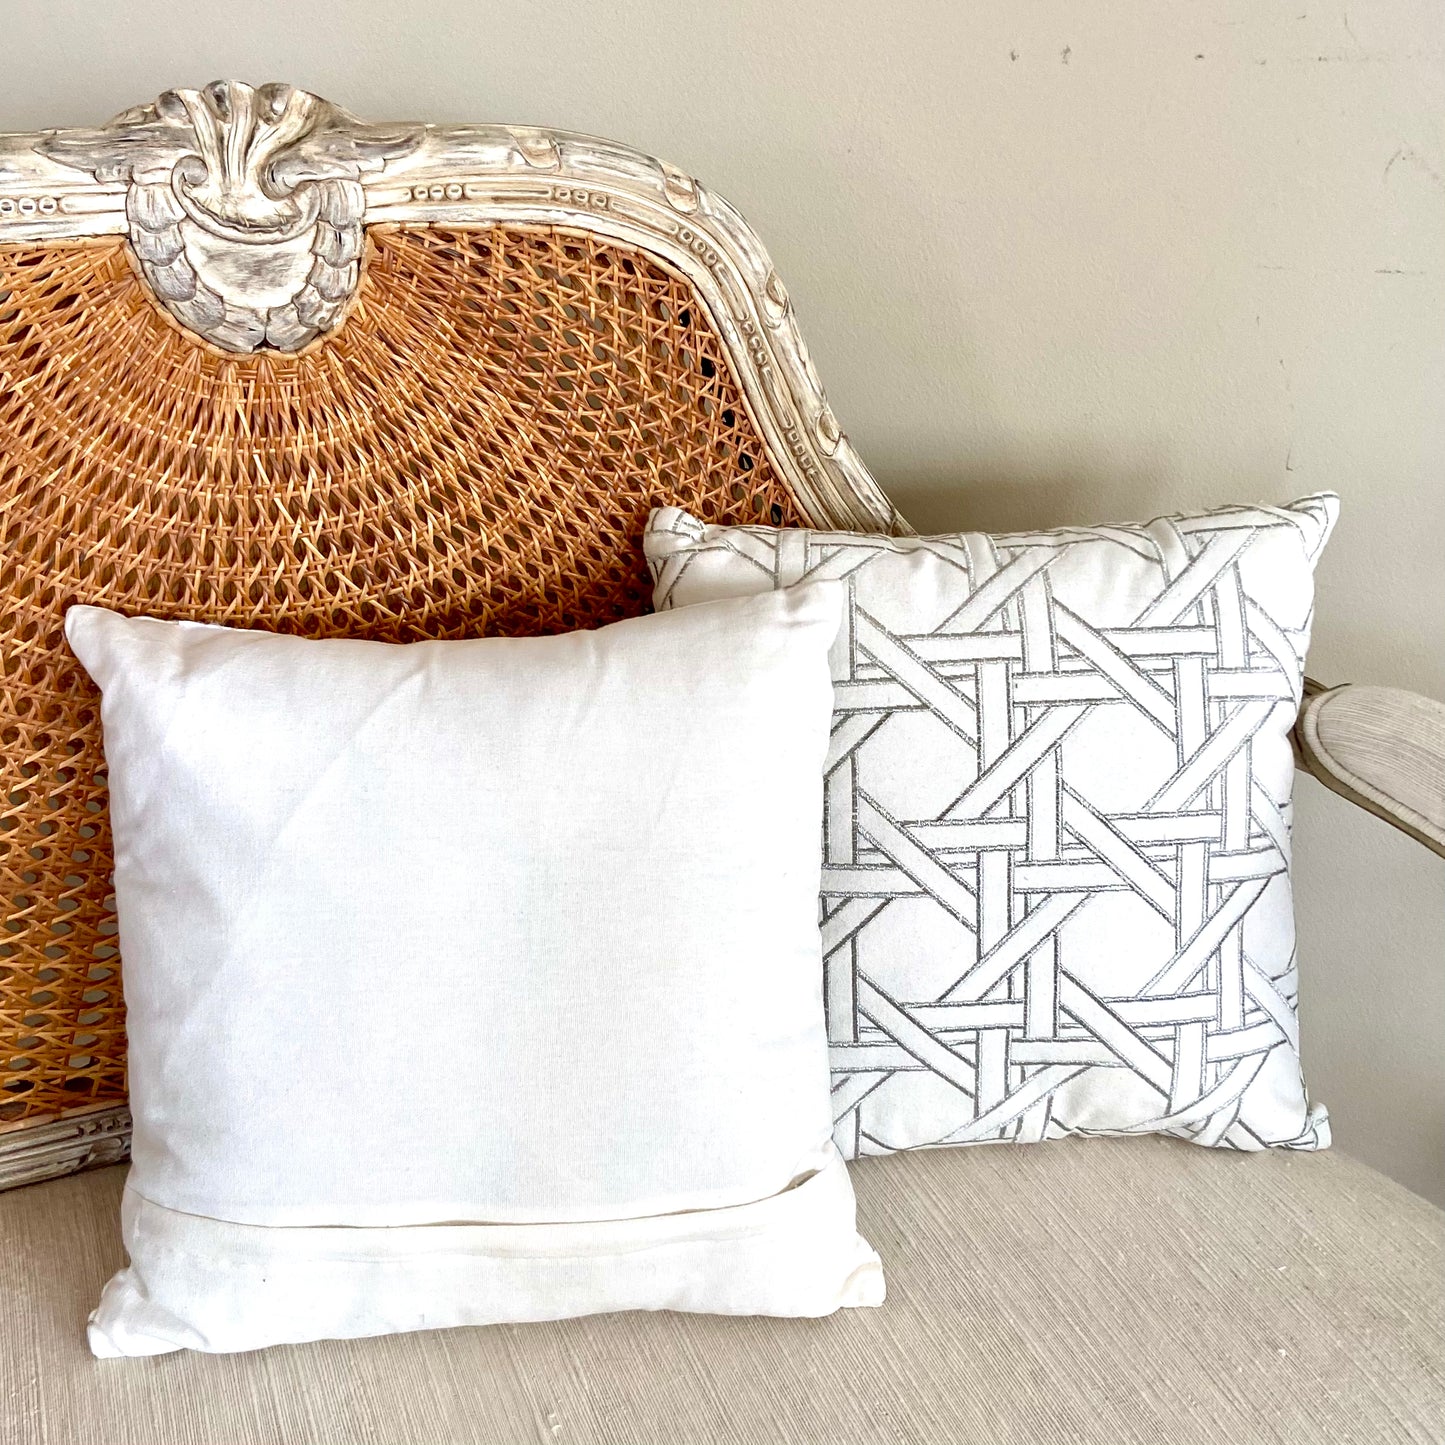 Designer Pair (2) cane throw pillow, white/grey, 16x16” - Pristine!